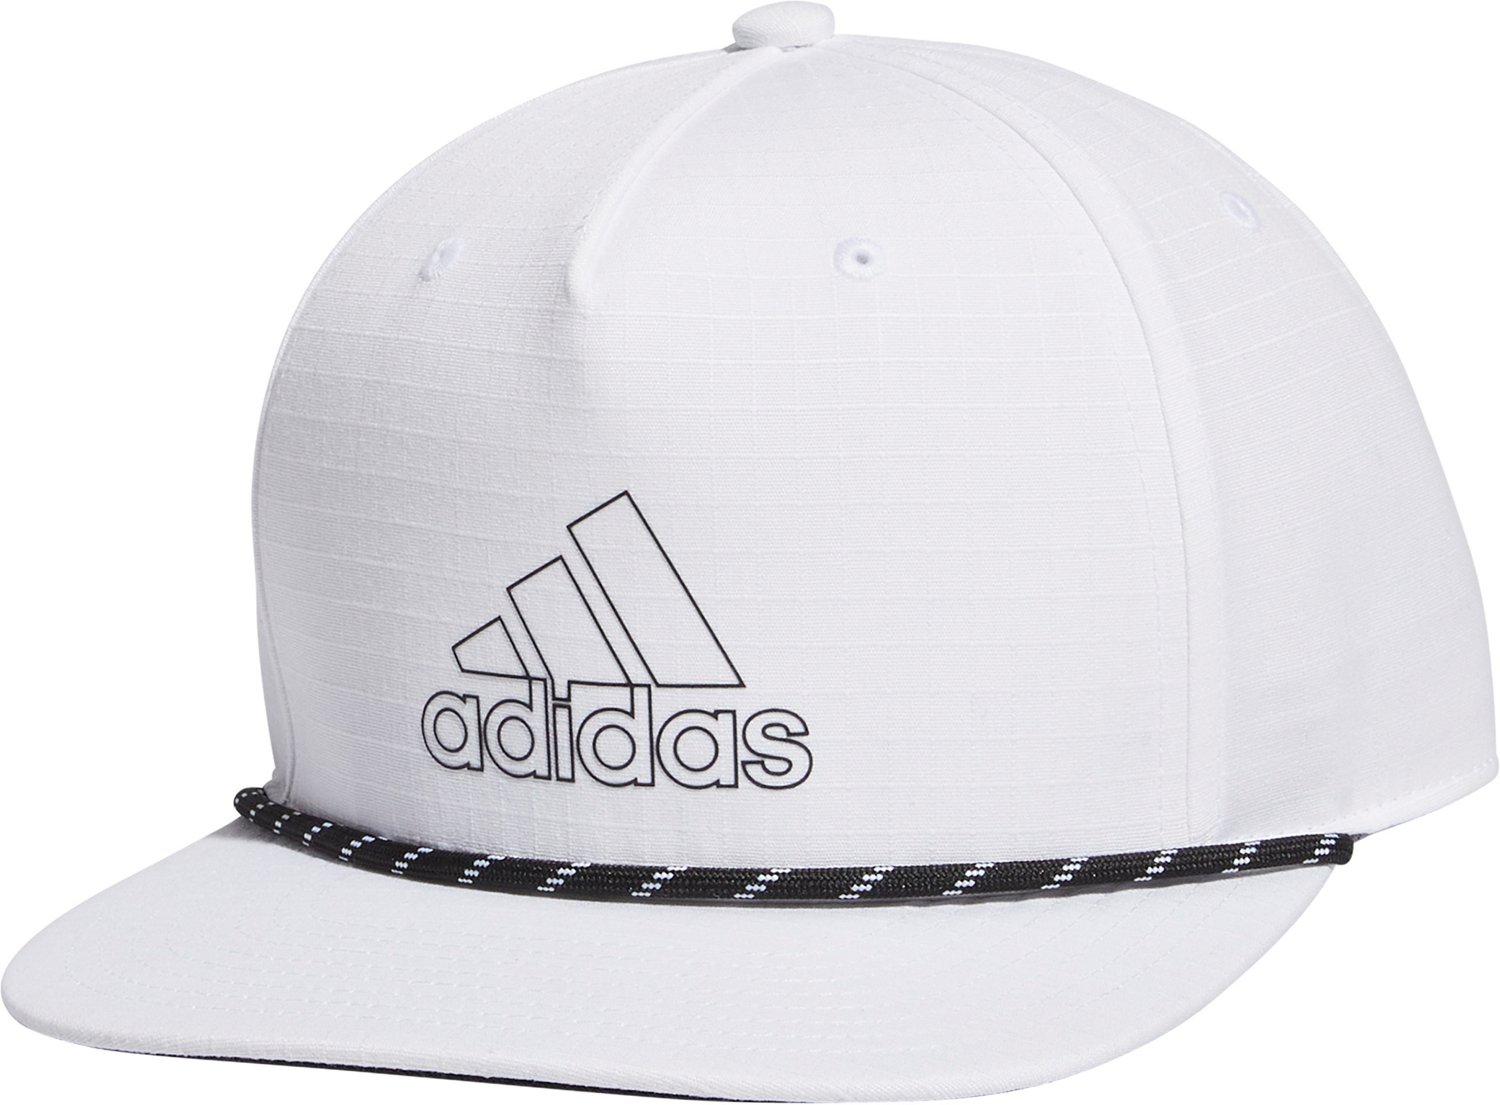 Adidas Adjustable Performance Hat - Carolina Hurricanes - Adult